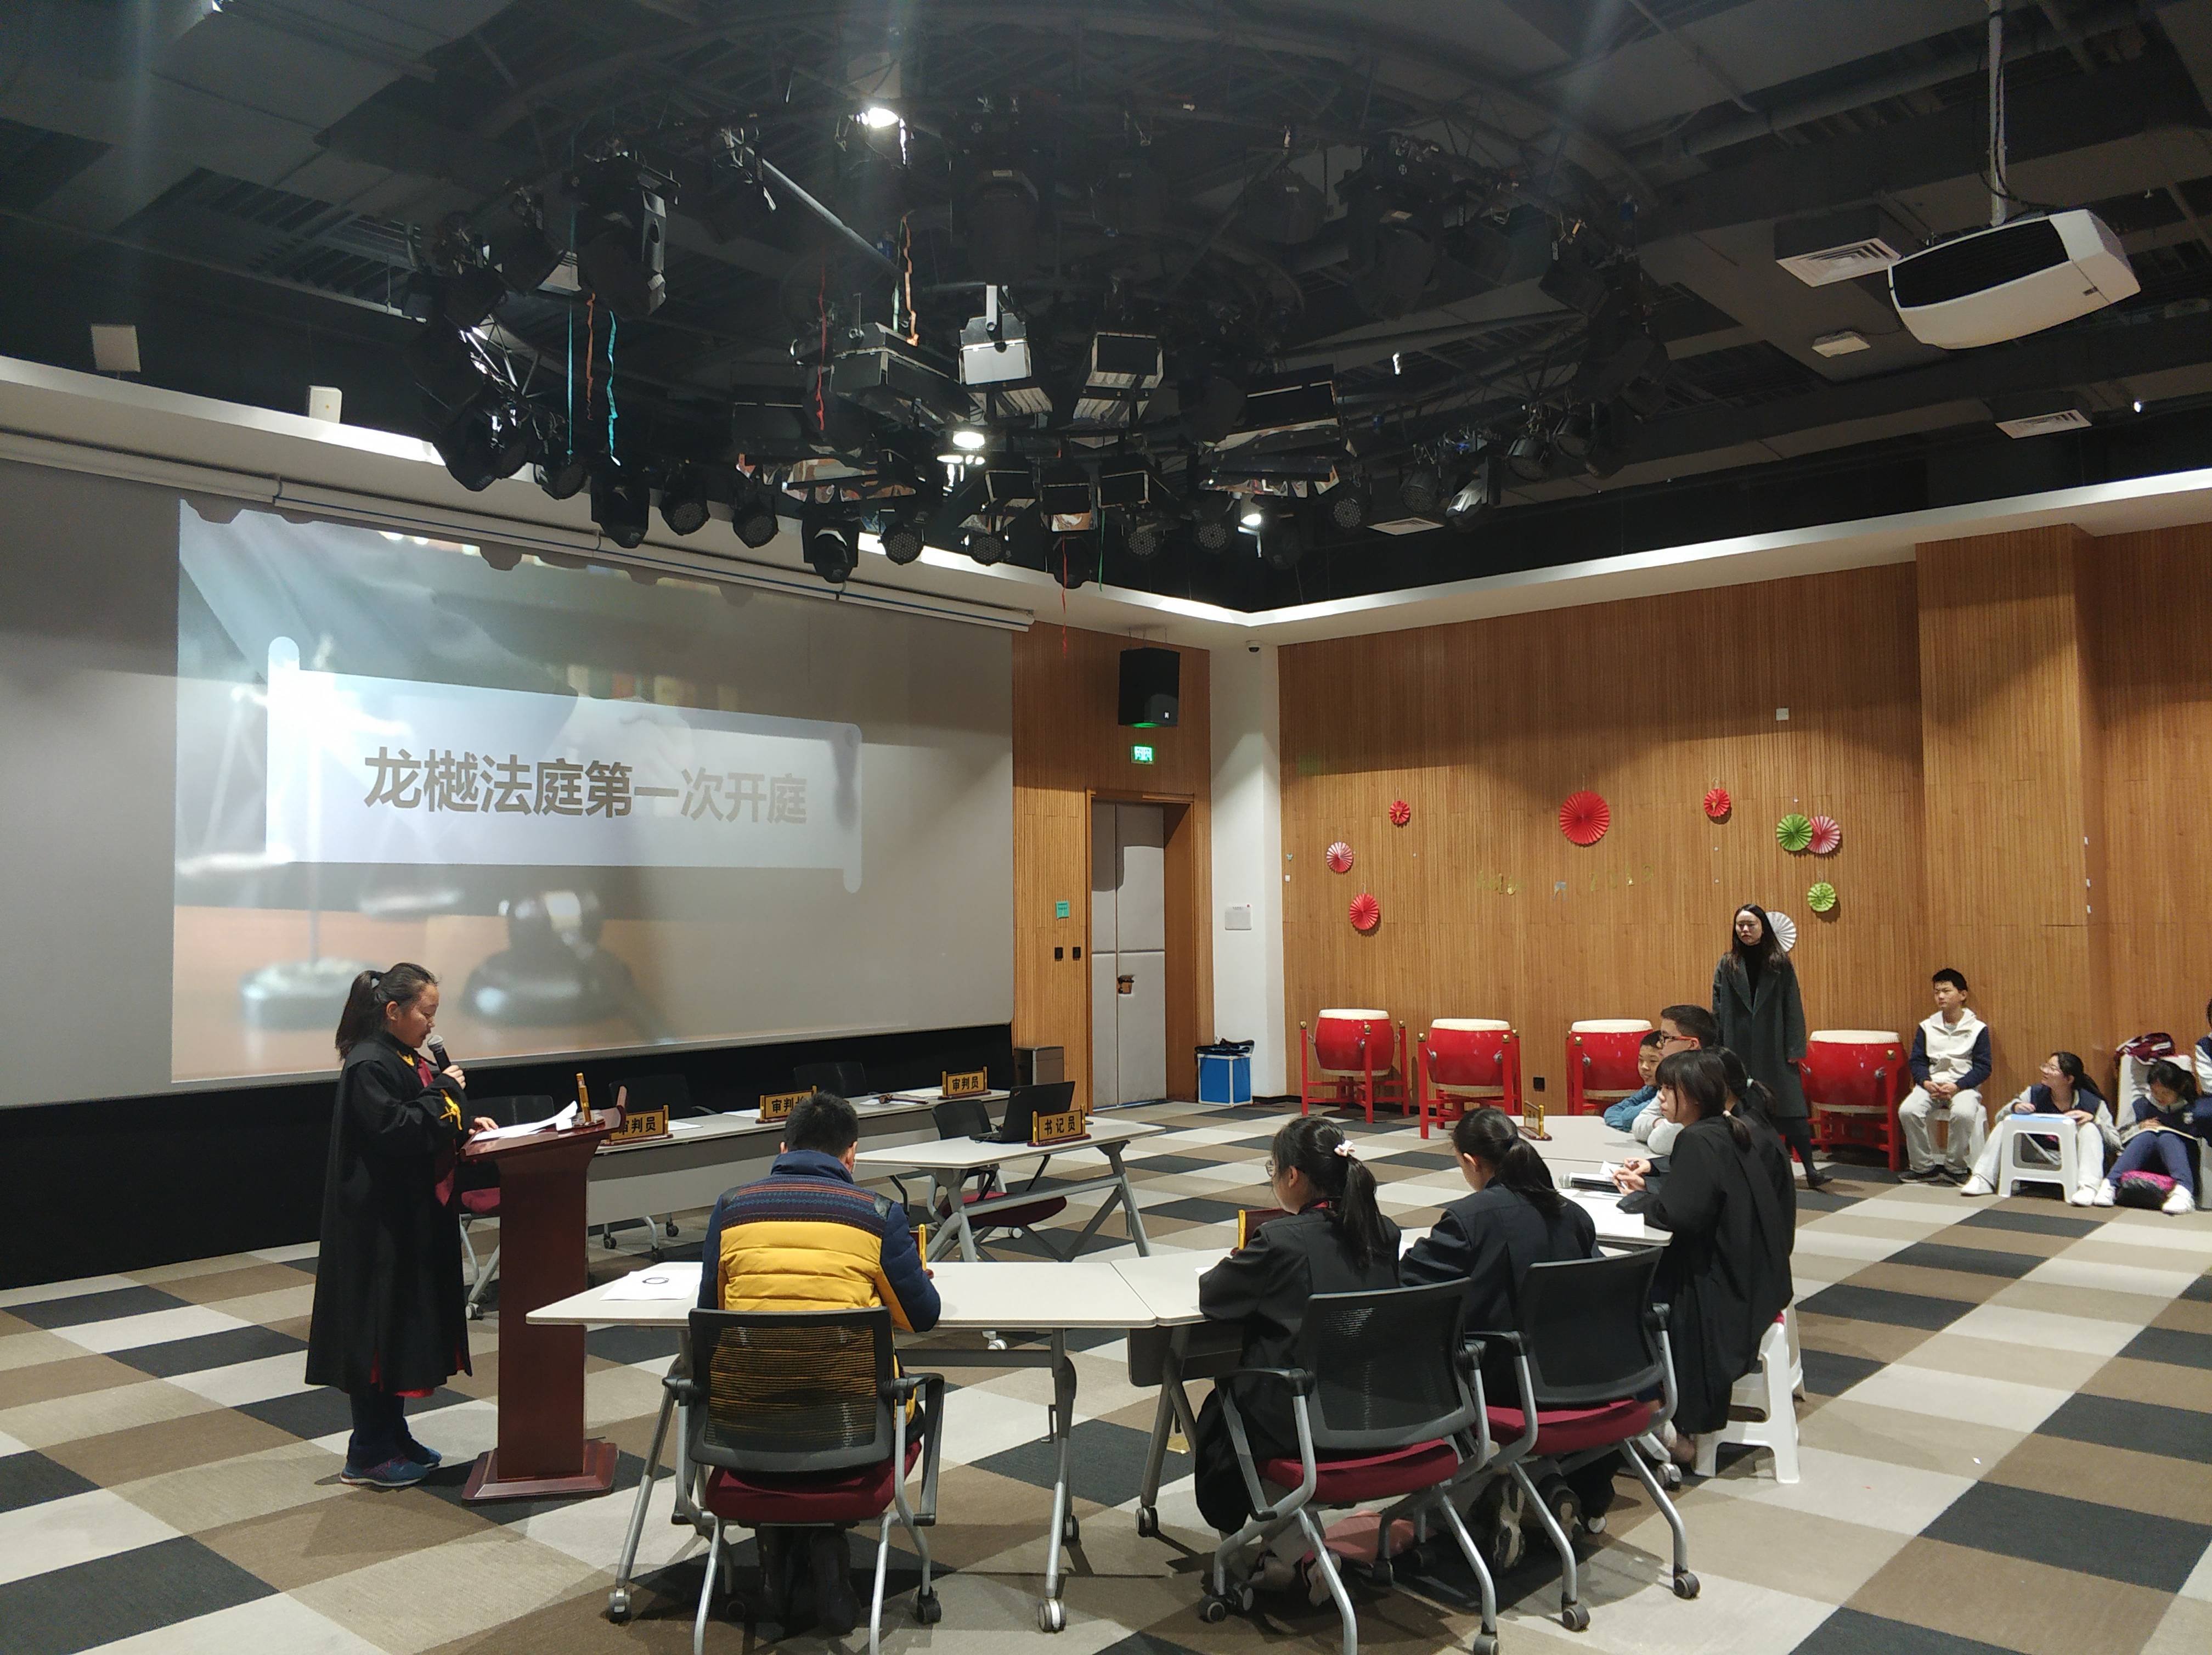 北京十一学校龙樾实验中学校长王海霞:创造适合每位学生发展的教育